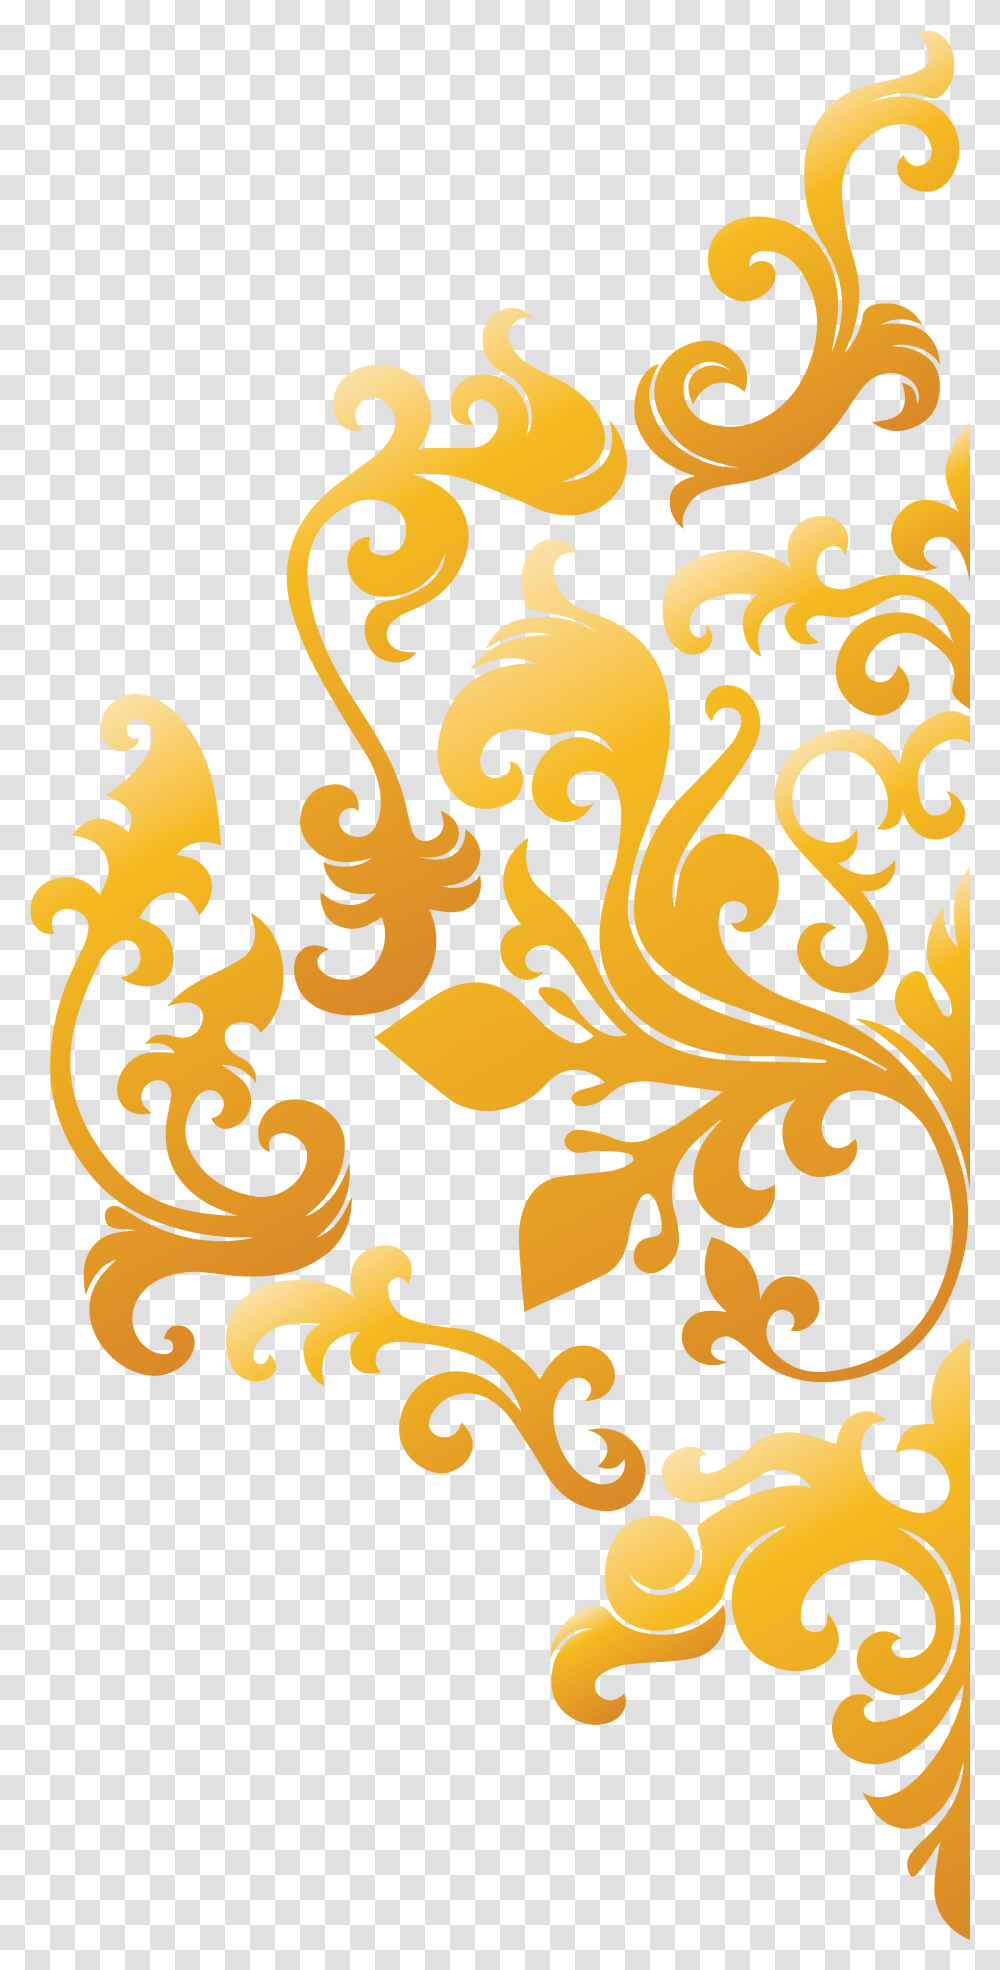 Download Damask Design Motif Batik Gold, Floral Design, Pattern, Graphics, Art Transparent Png